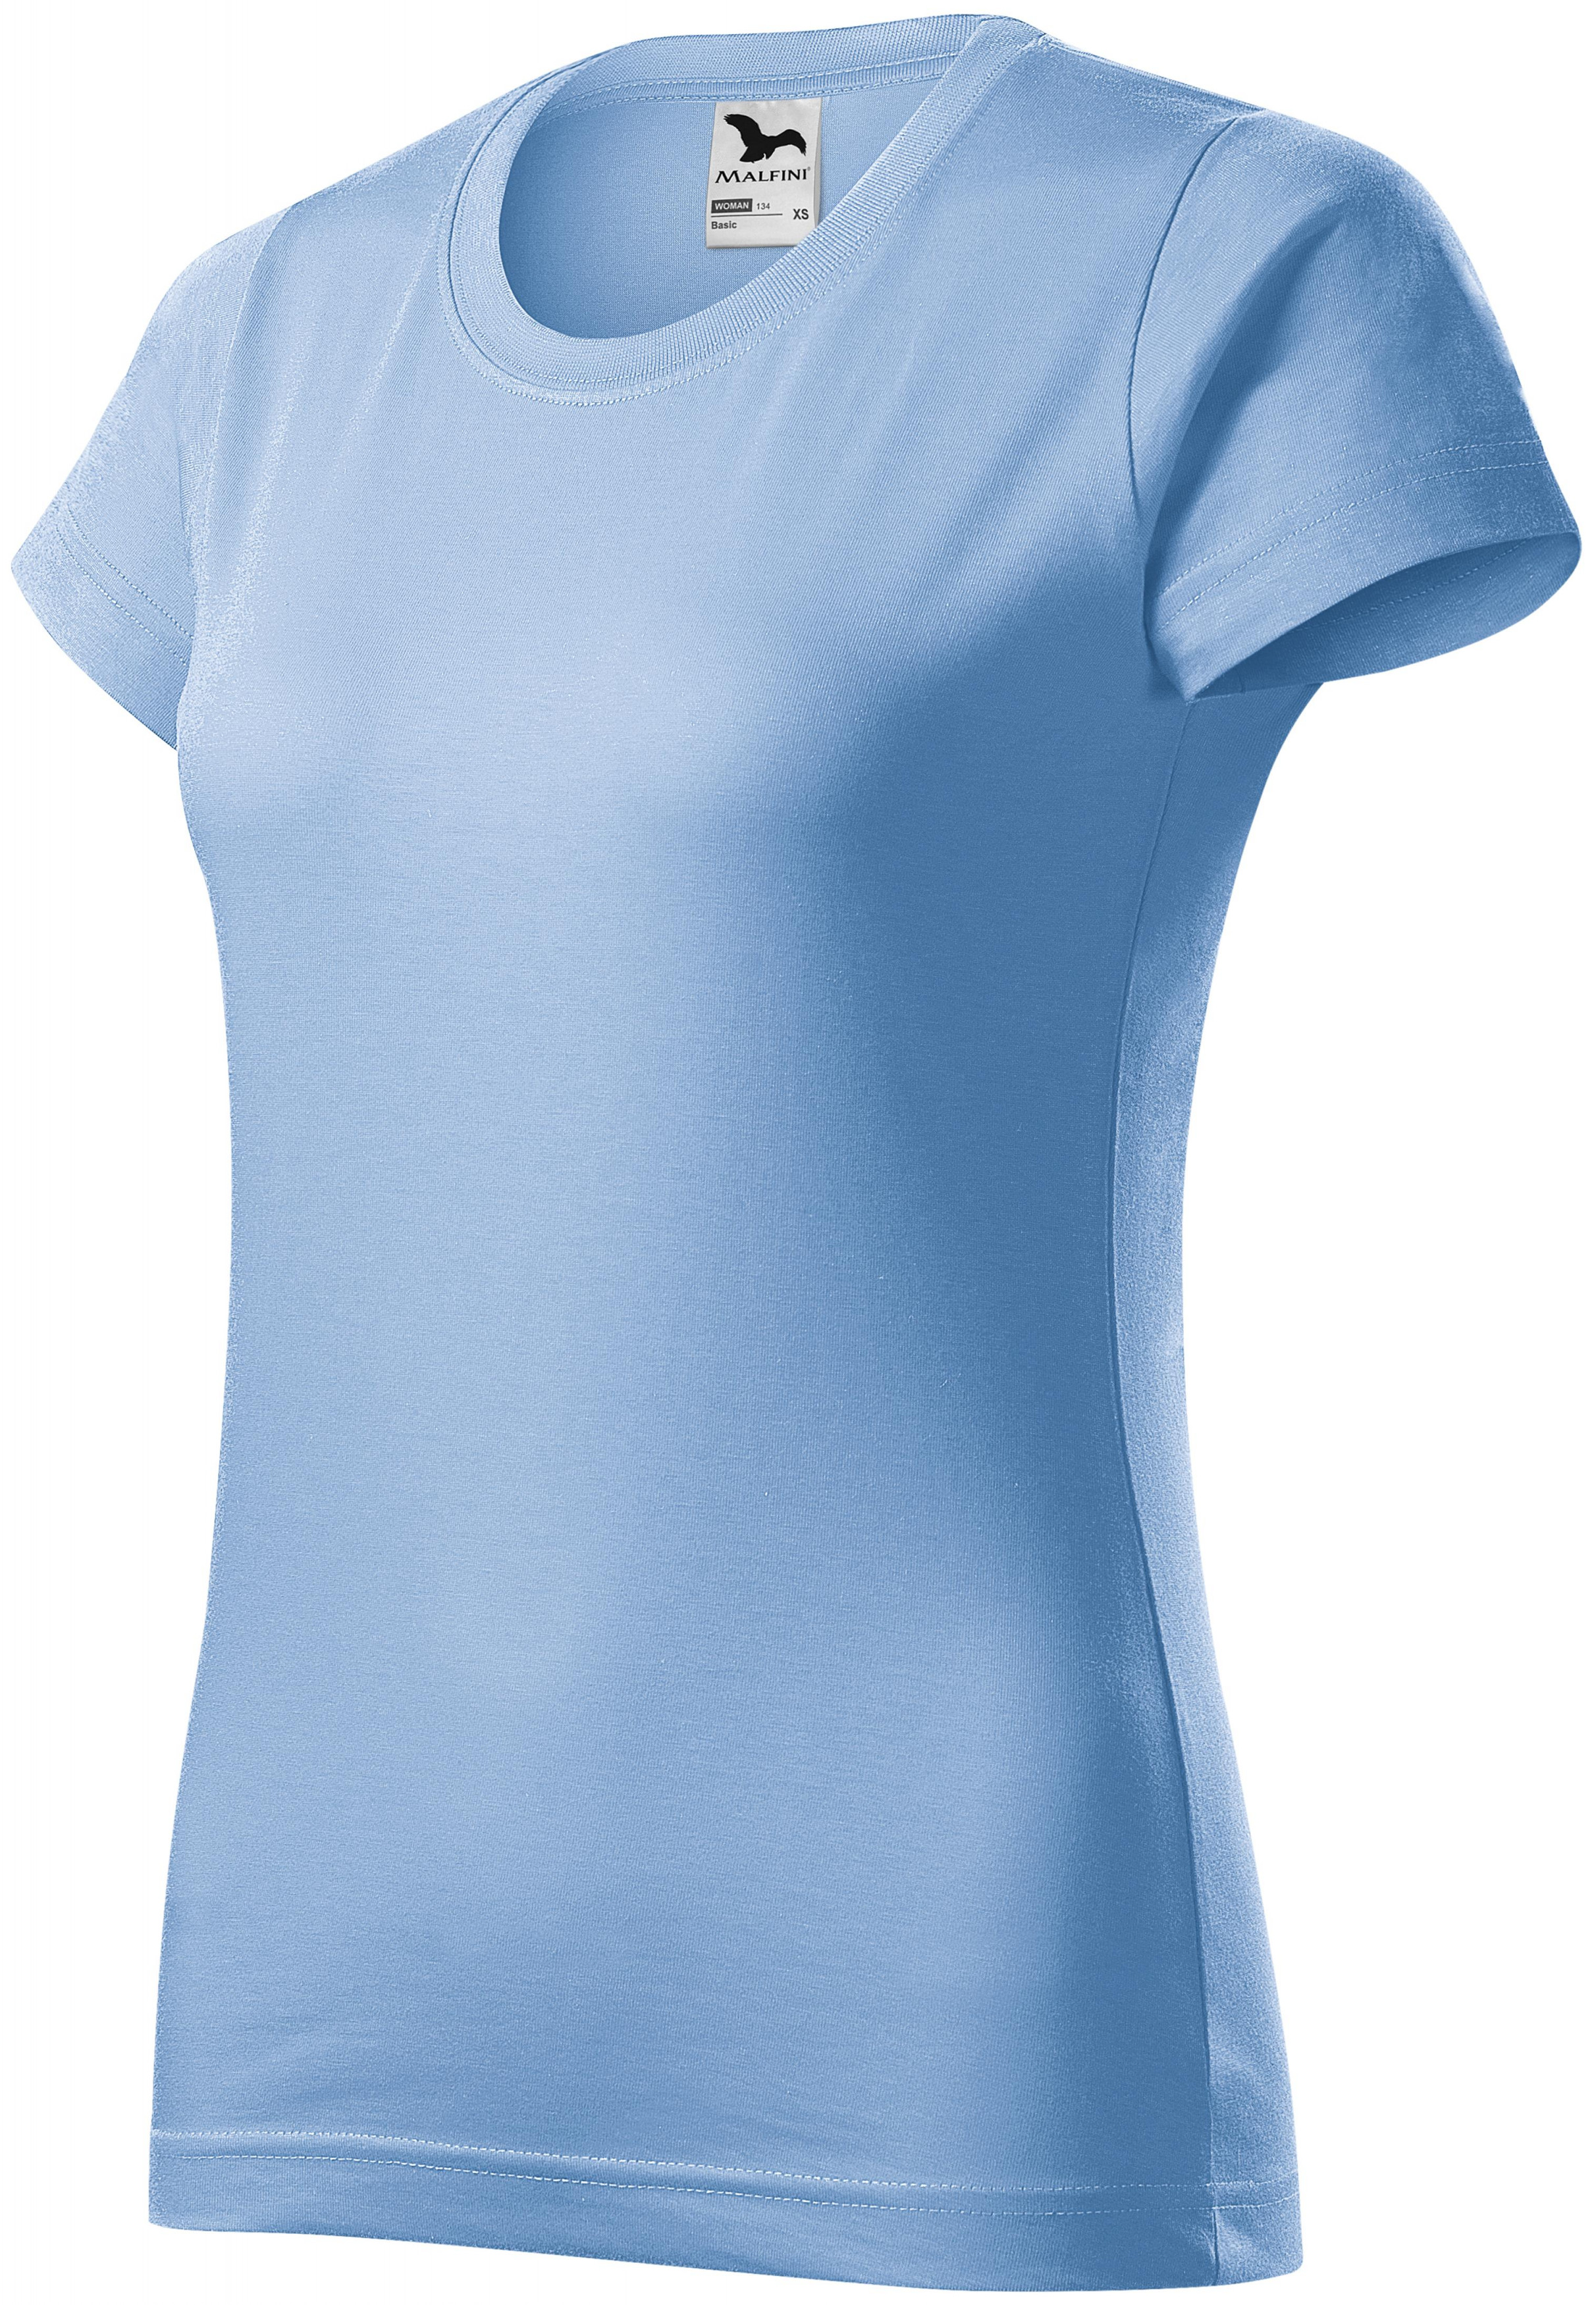 Dámske tričko jednoduché, nebeská modrá, 2XL